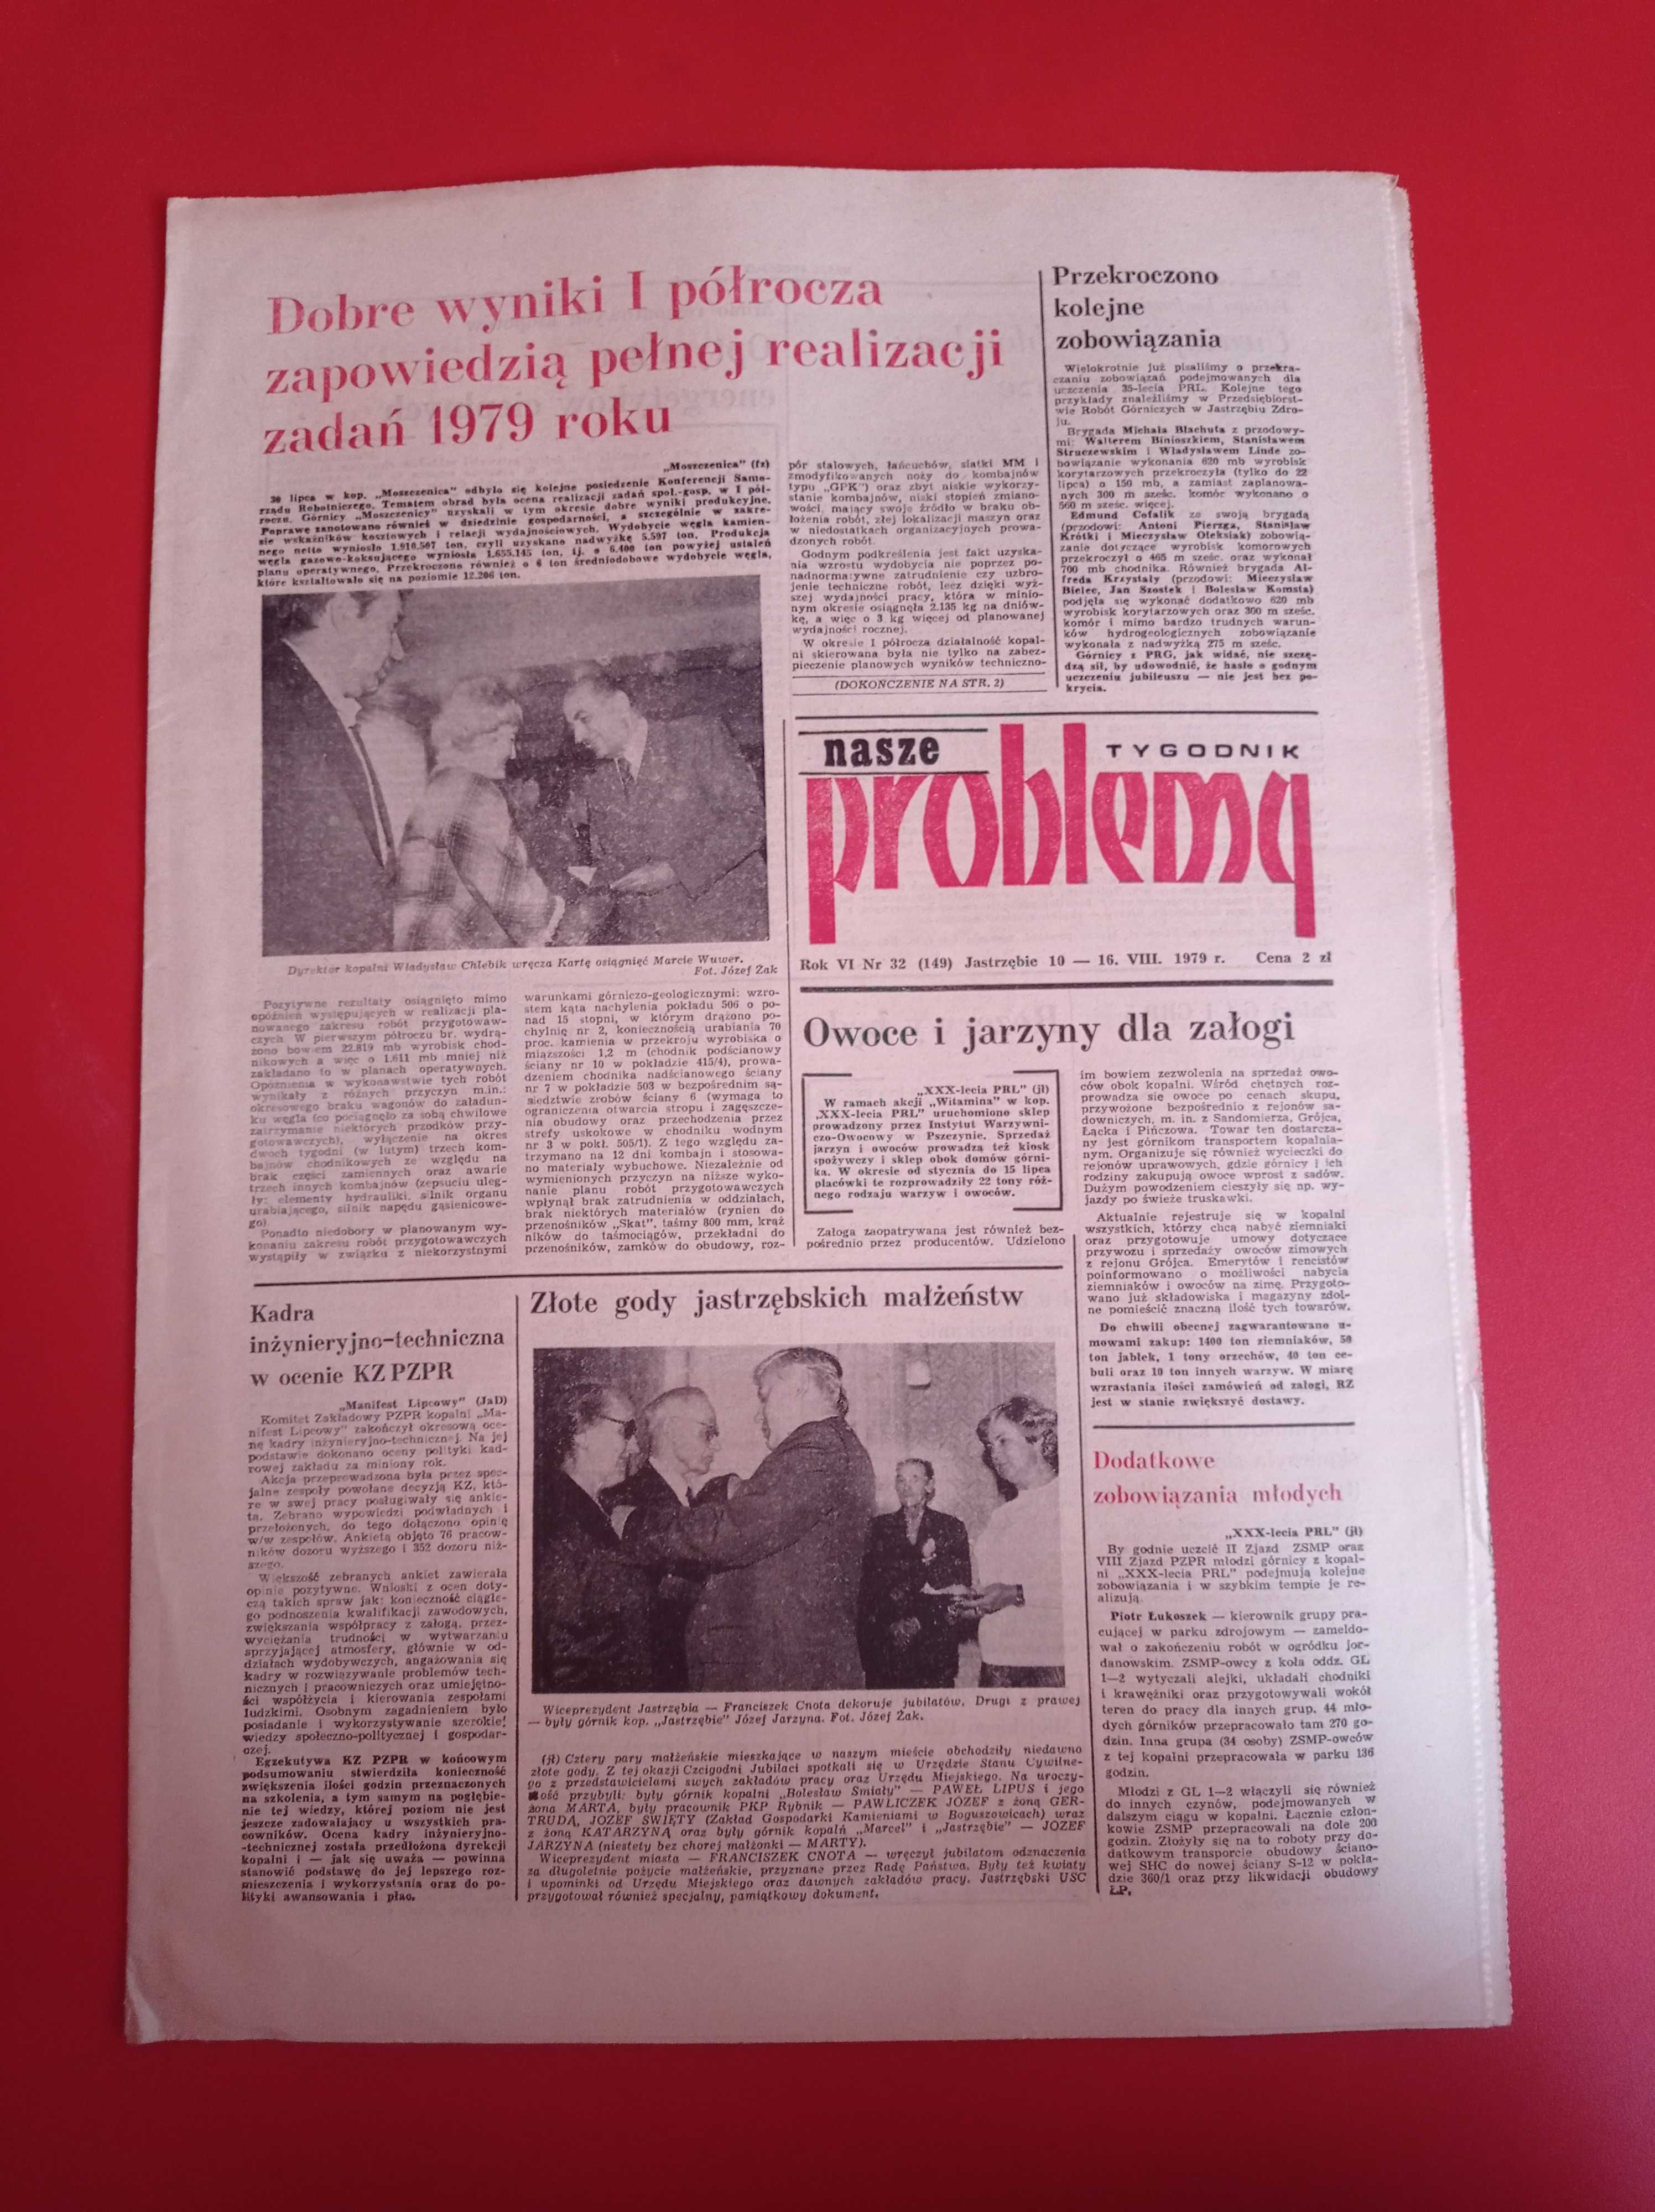 Nasze problemy, Jastrzębie, nr 32, 10-16 sierpnia 1979